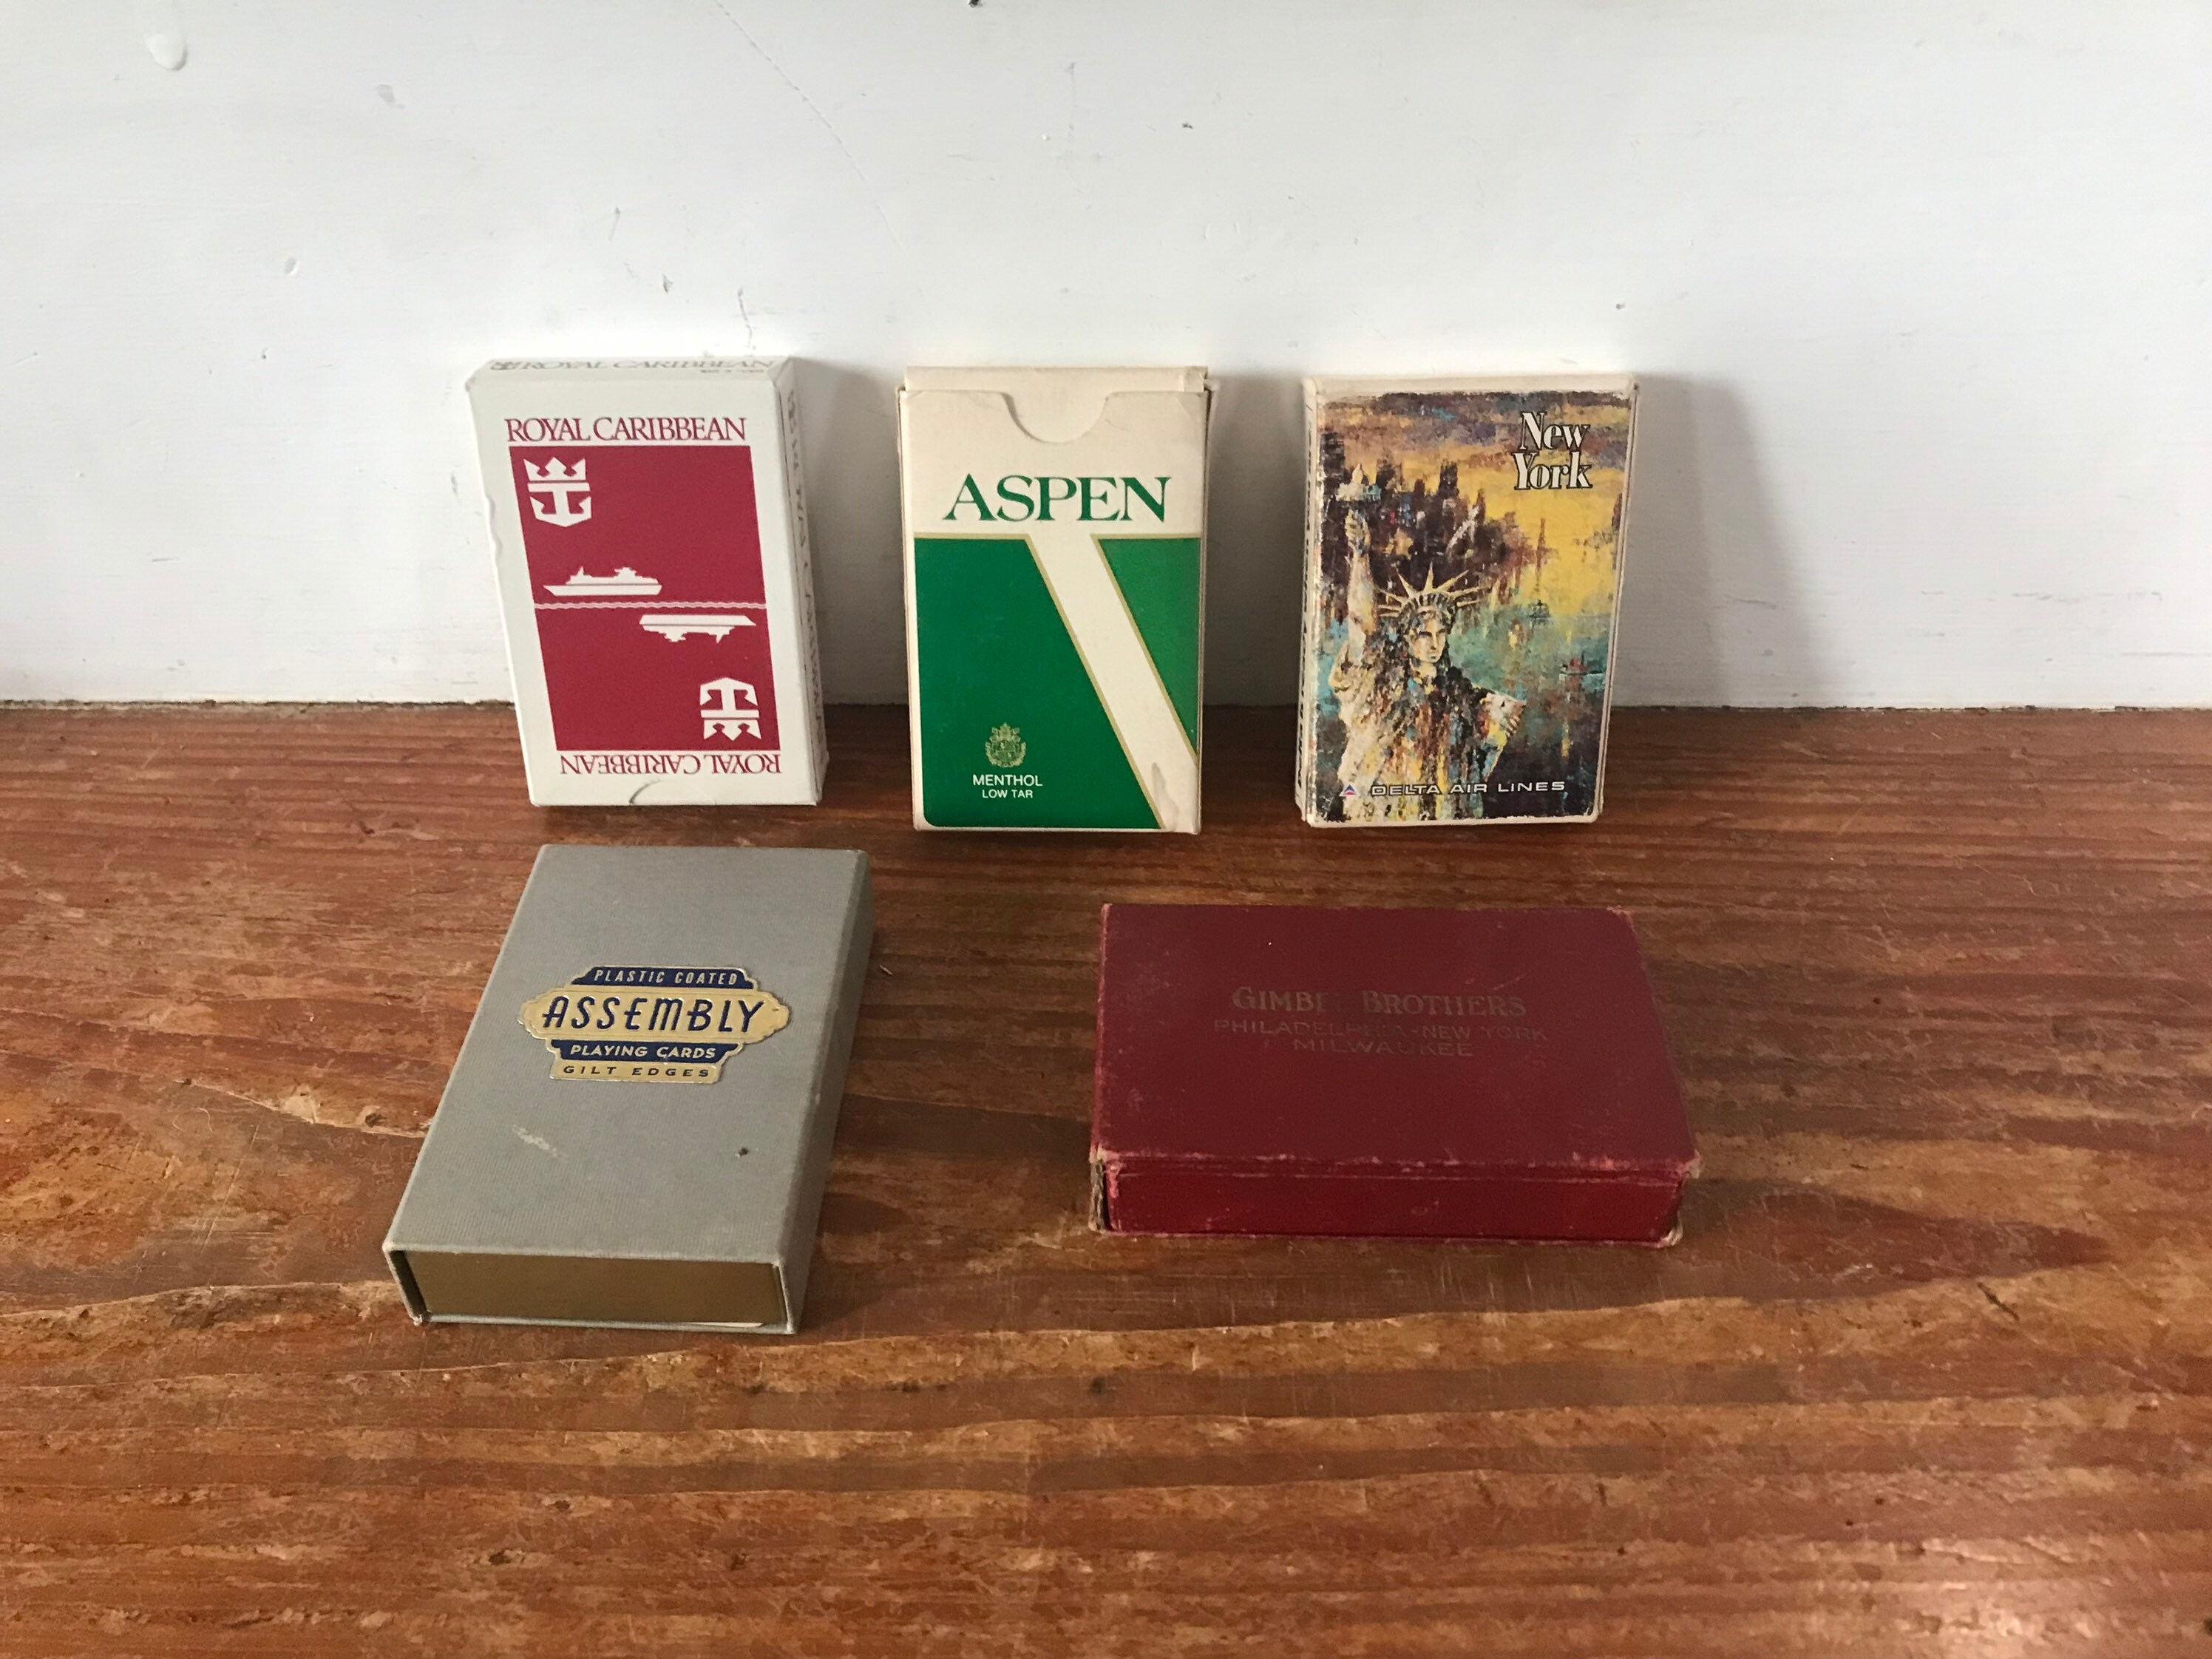 Vintage Prada playing cards (unused)